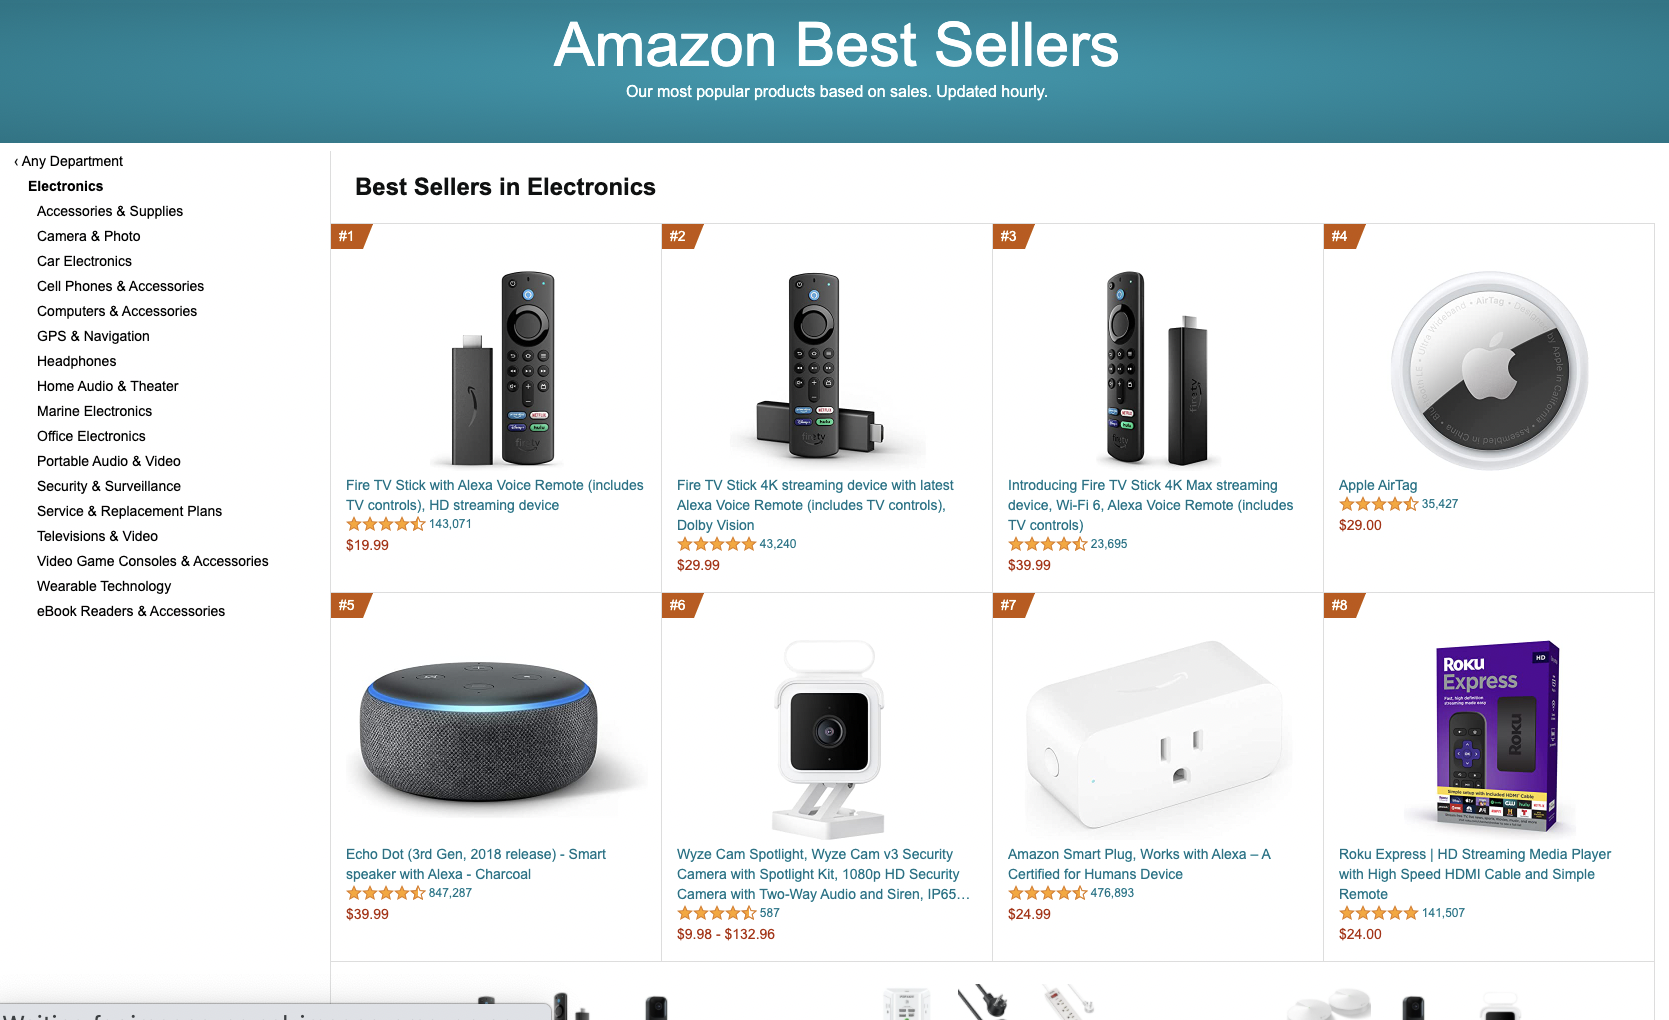 Amazon Bestsellers example